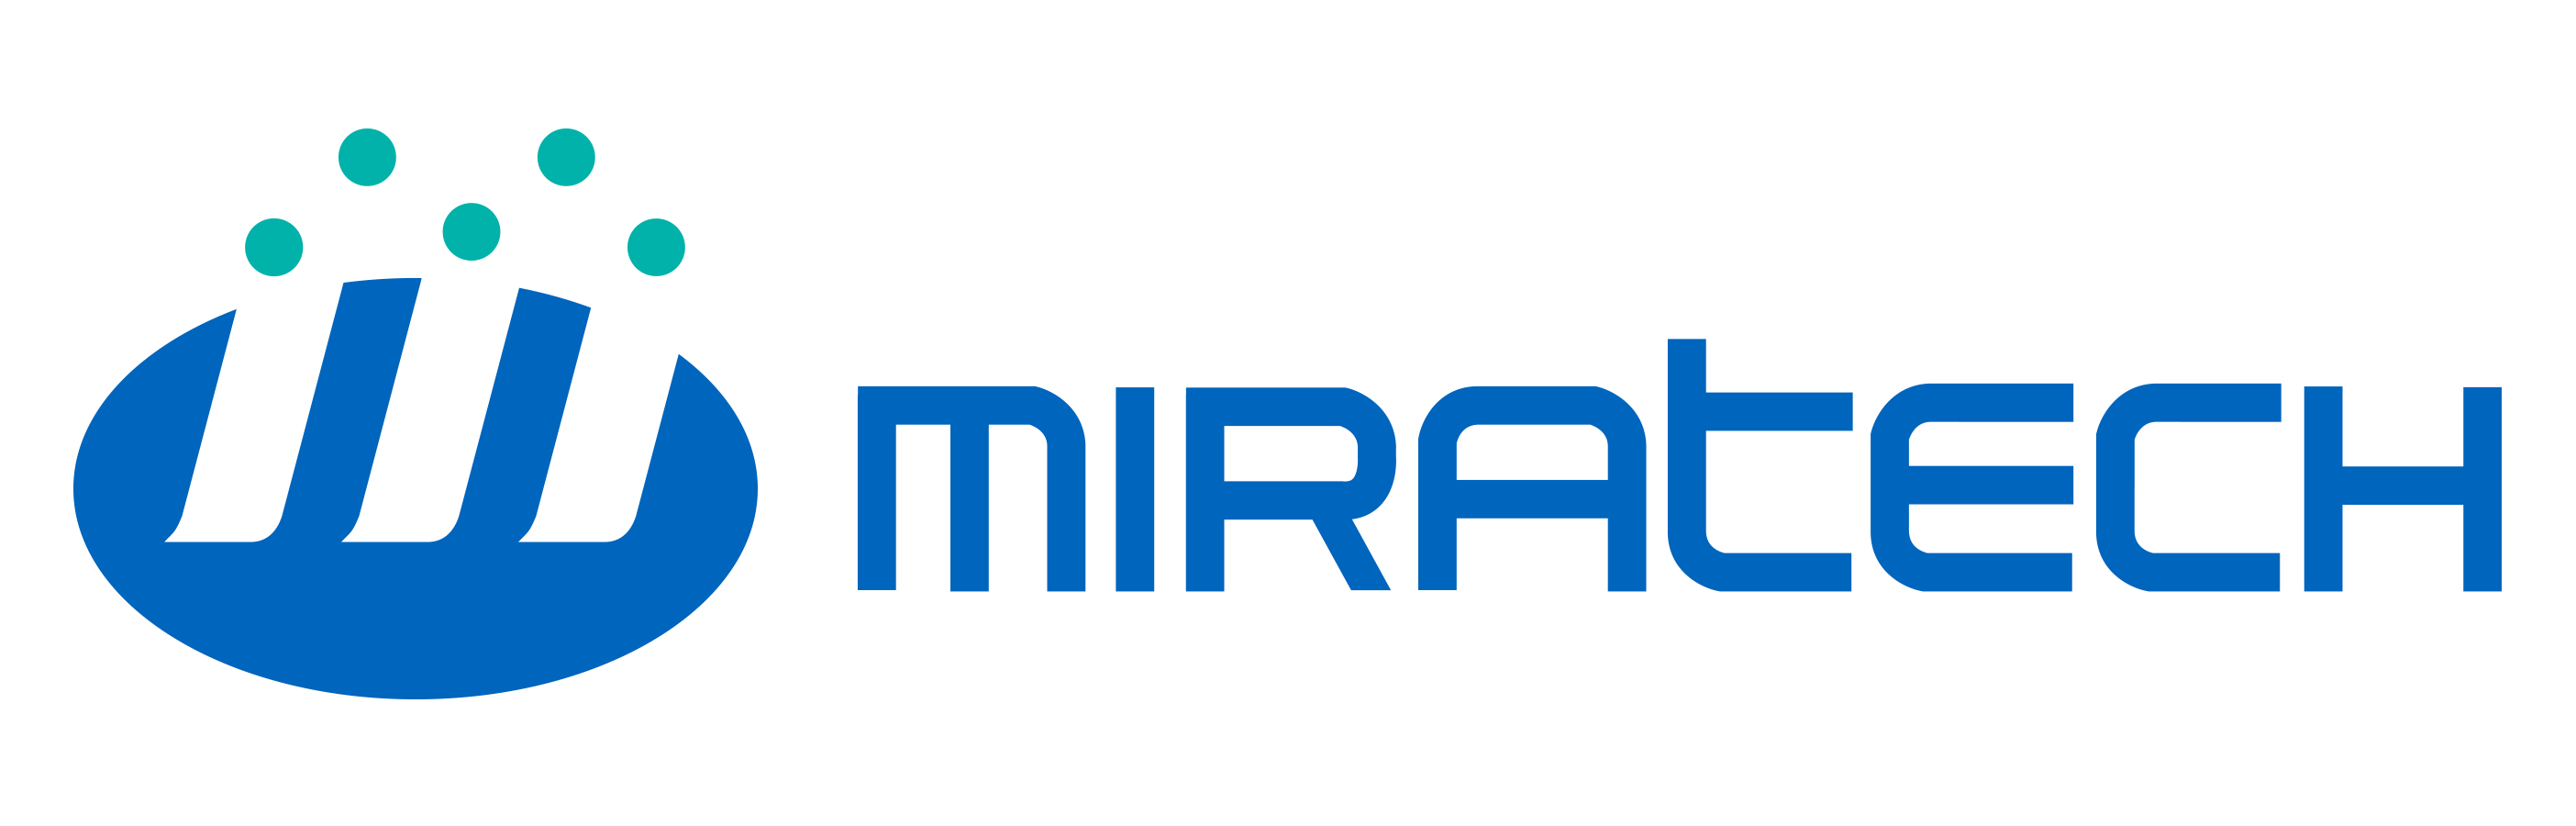 MIRATECH GmbH